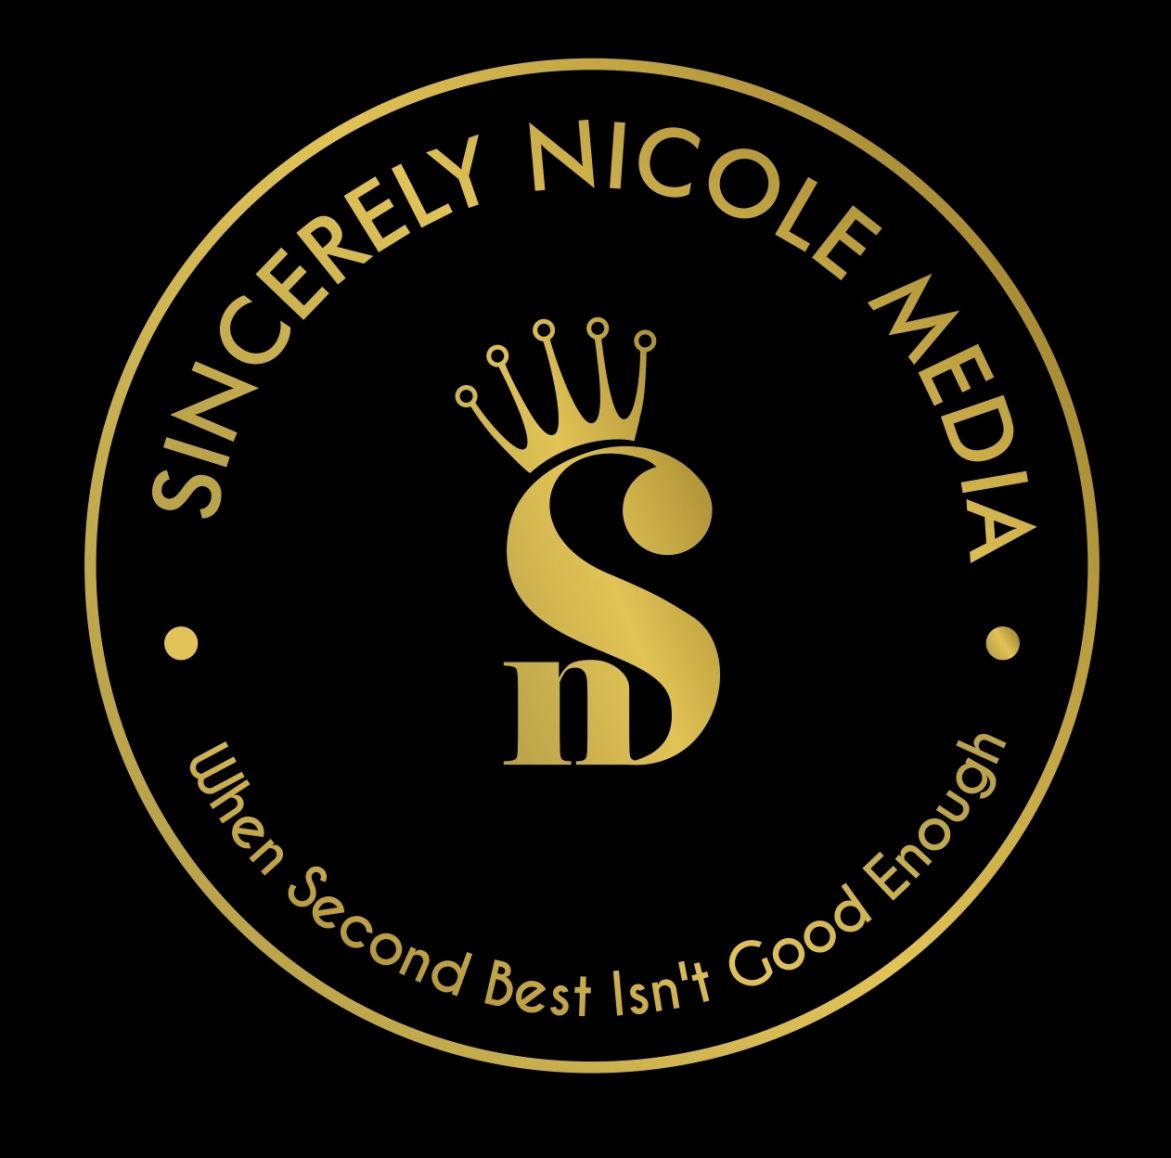 Sincerely Nicole Media